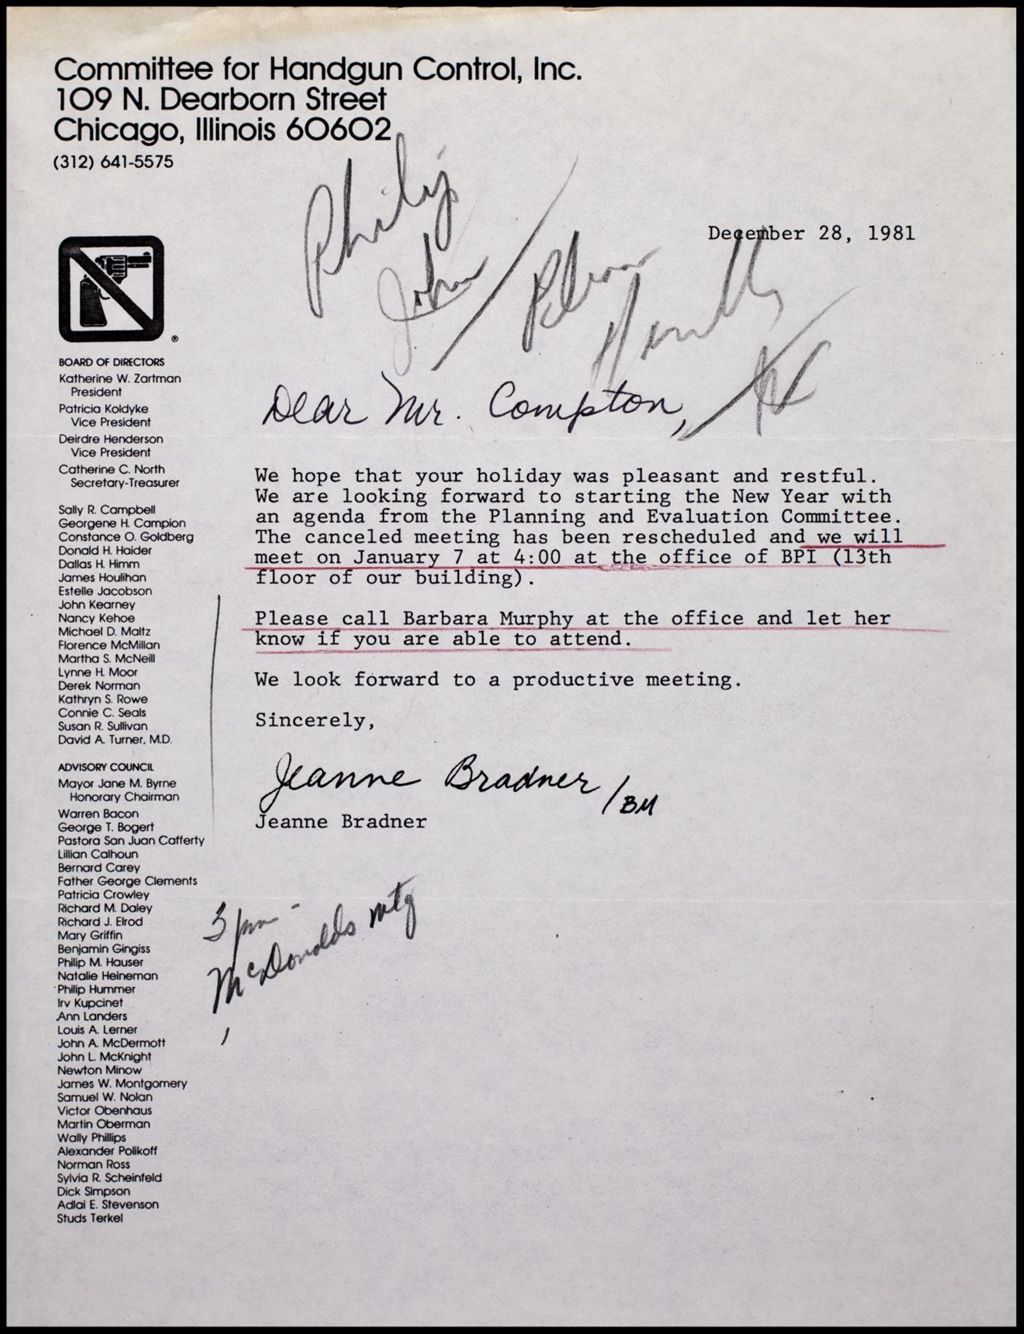 Committee for Handgun Control, 1981 (Folder II-2266)